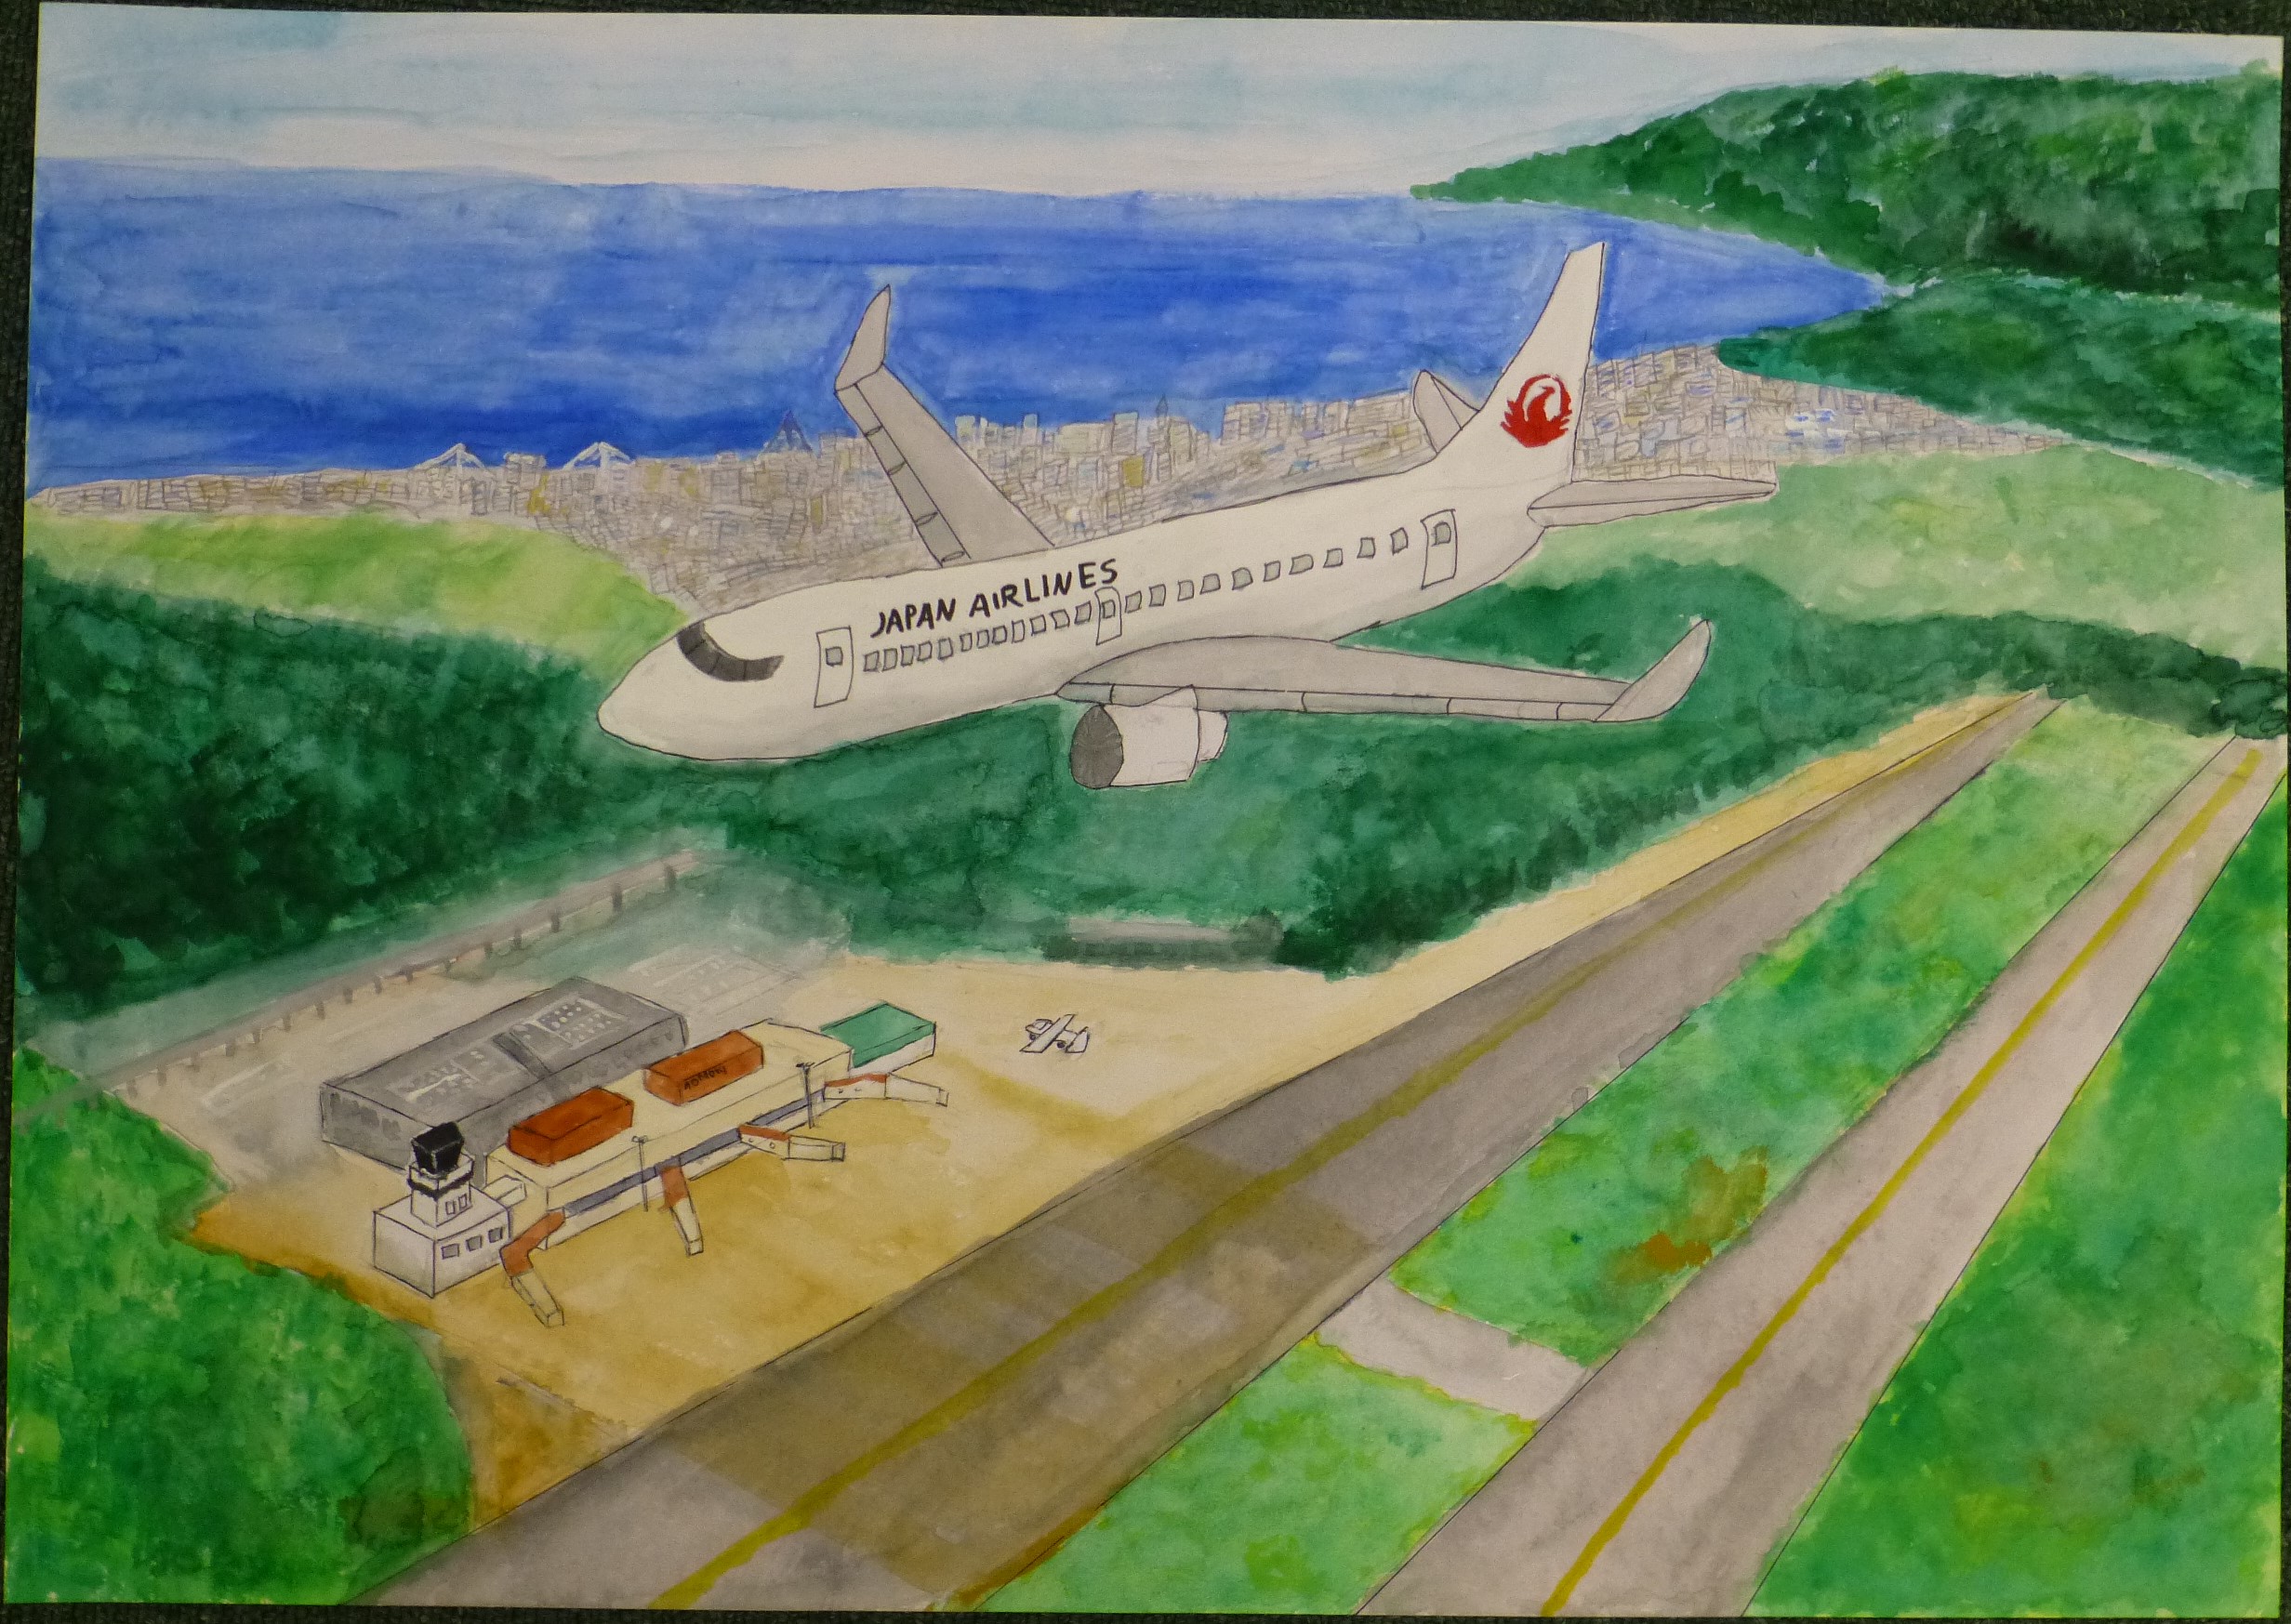 ２０１６青森空港絵画コンテスト入賞者発表 青森空港ビル株式会社